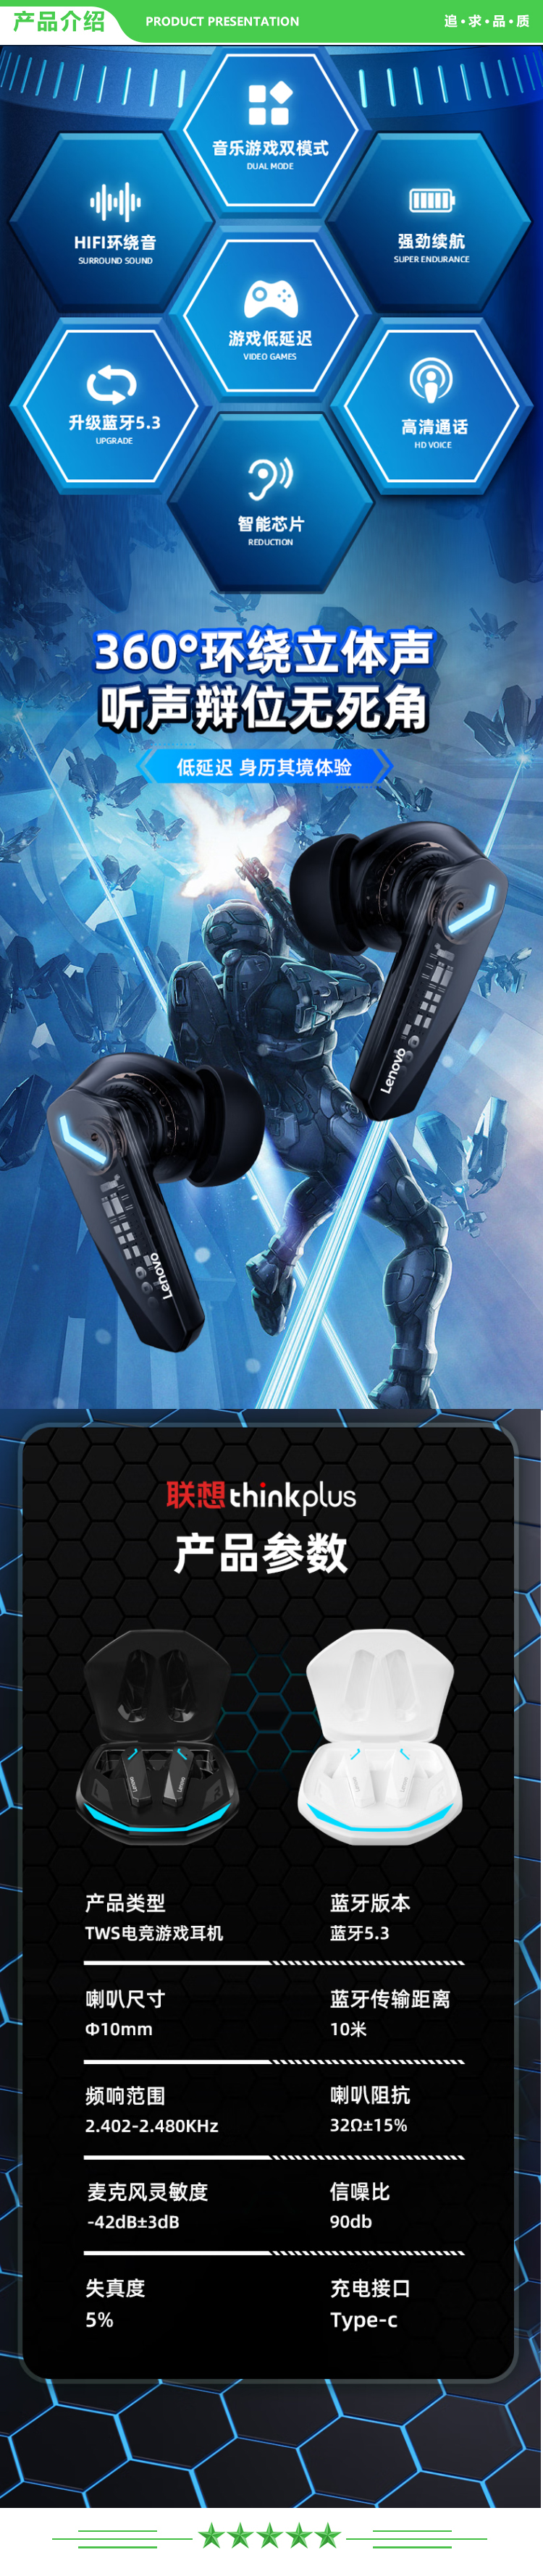 联想 Lenovo thinkplus GM2 Pro 黑色 真无线蓝牙耳机 入耳式音乐运动降噪游戏低延迟耳机 通用苹果华为手机 .jpg